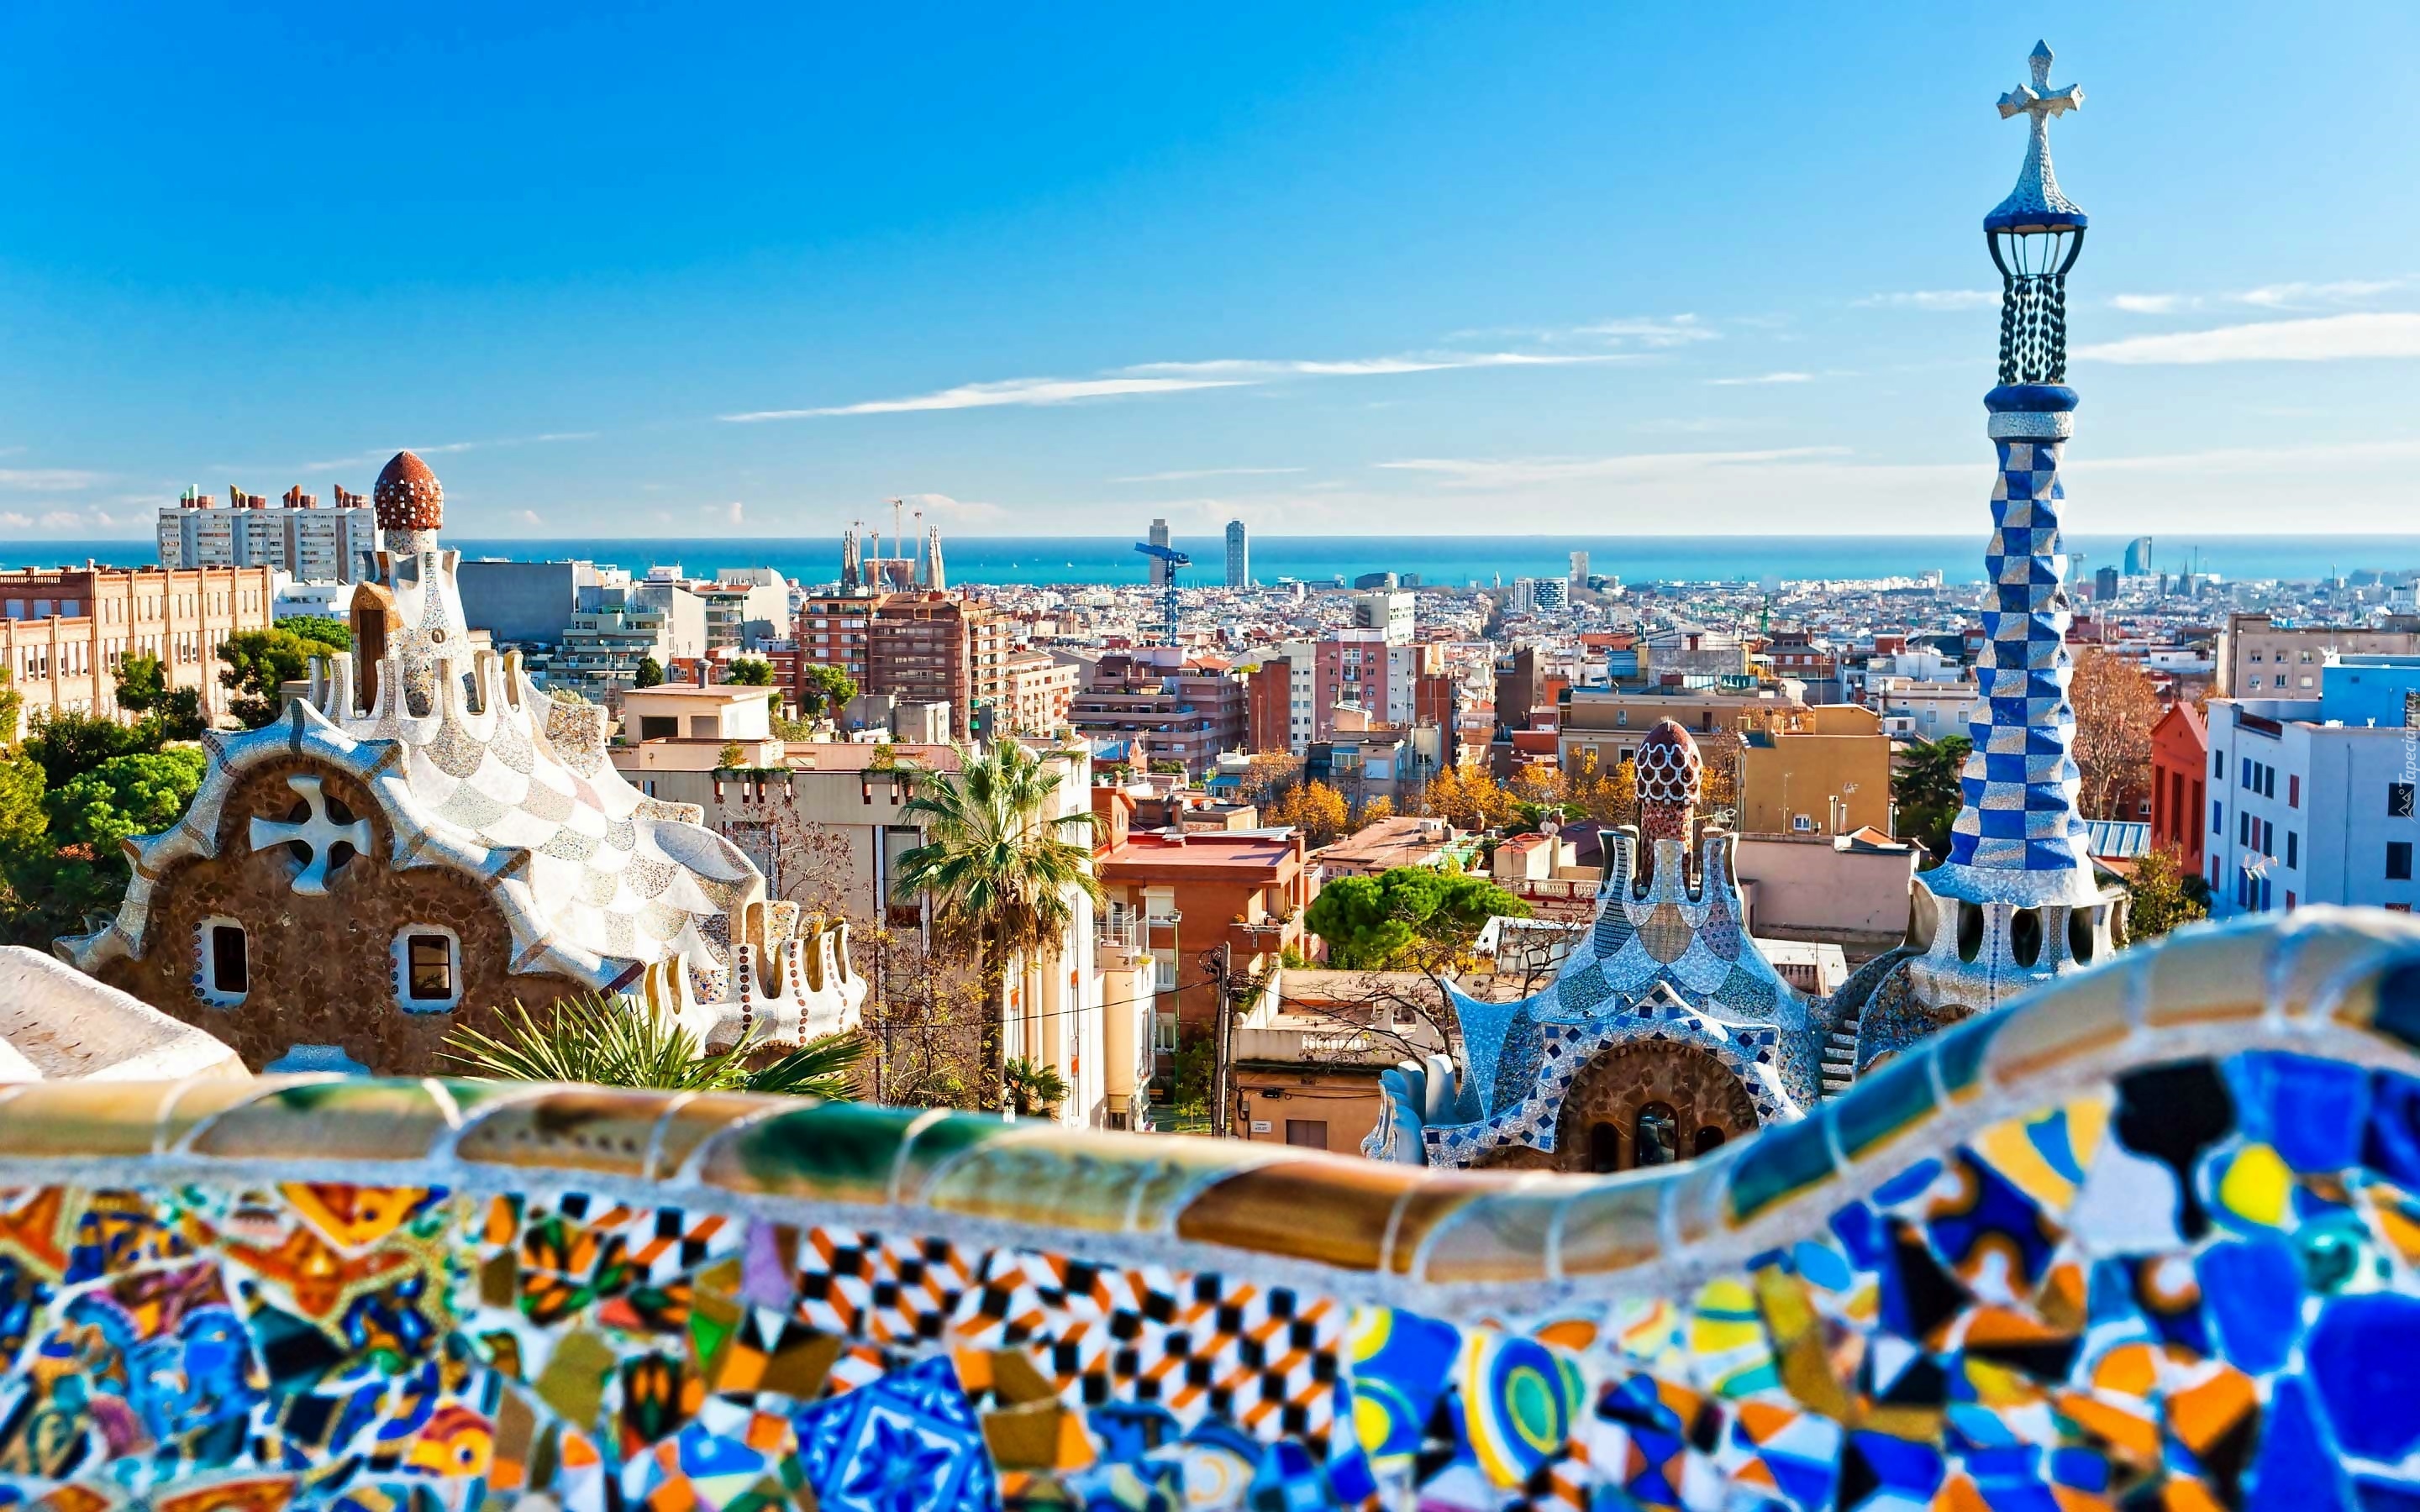 Panorama, Barcelony, Budynki, Gaudiego